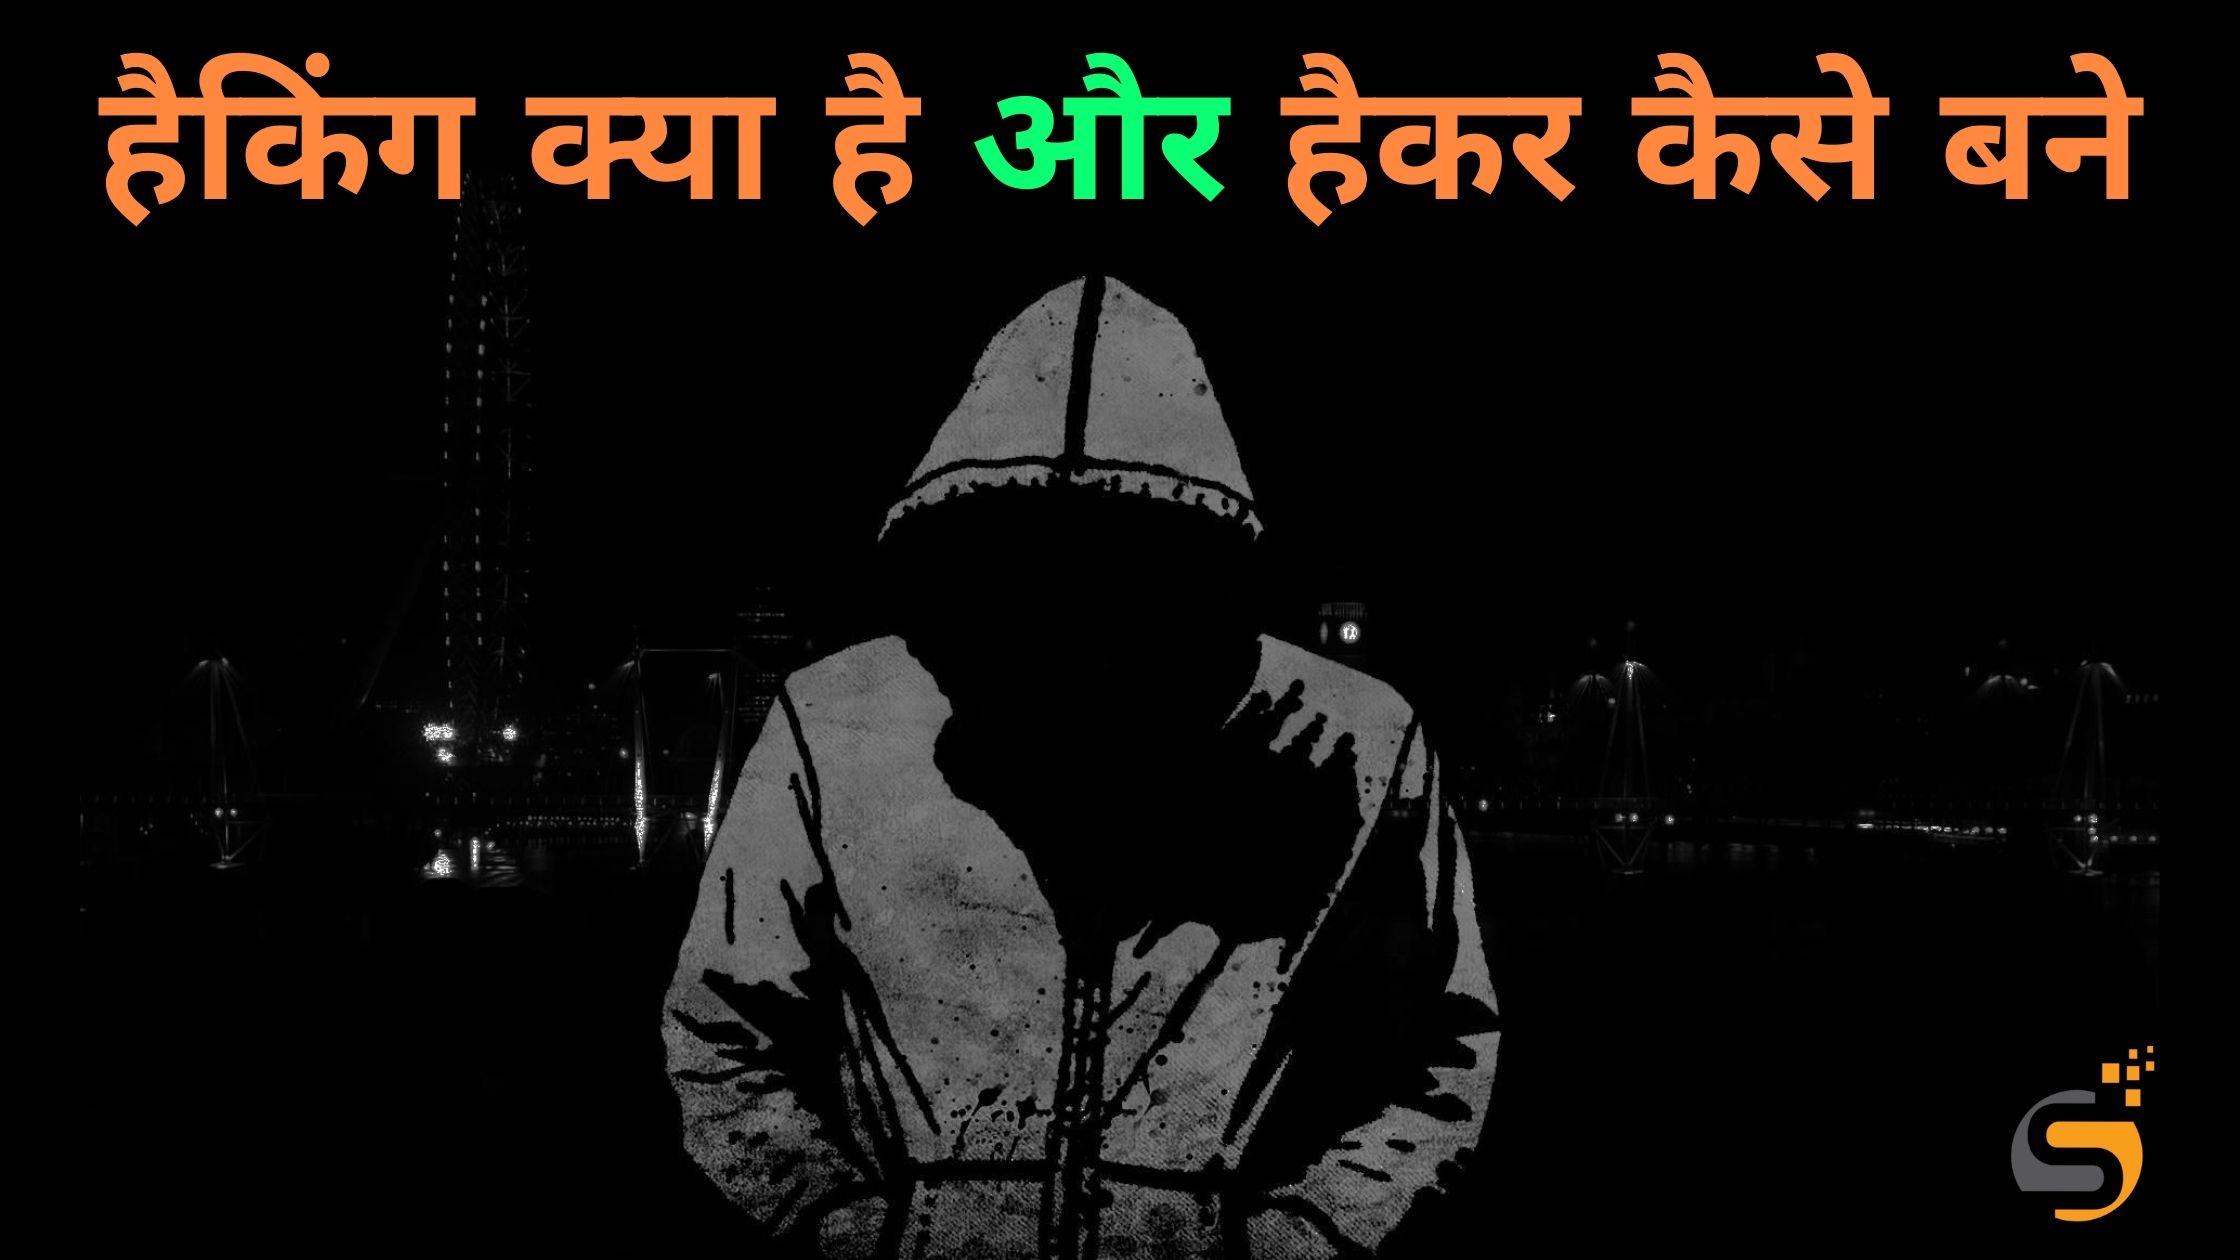 हैकिंग क्या है और हैकर कैसे बने, What is Hacking in Hindi, How to become a Hacker in Hindi, Hacking kya hai